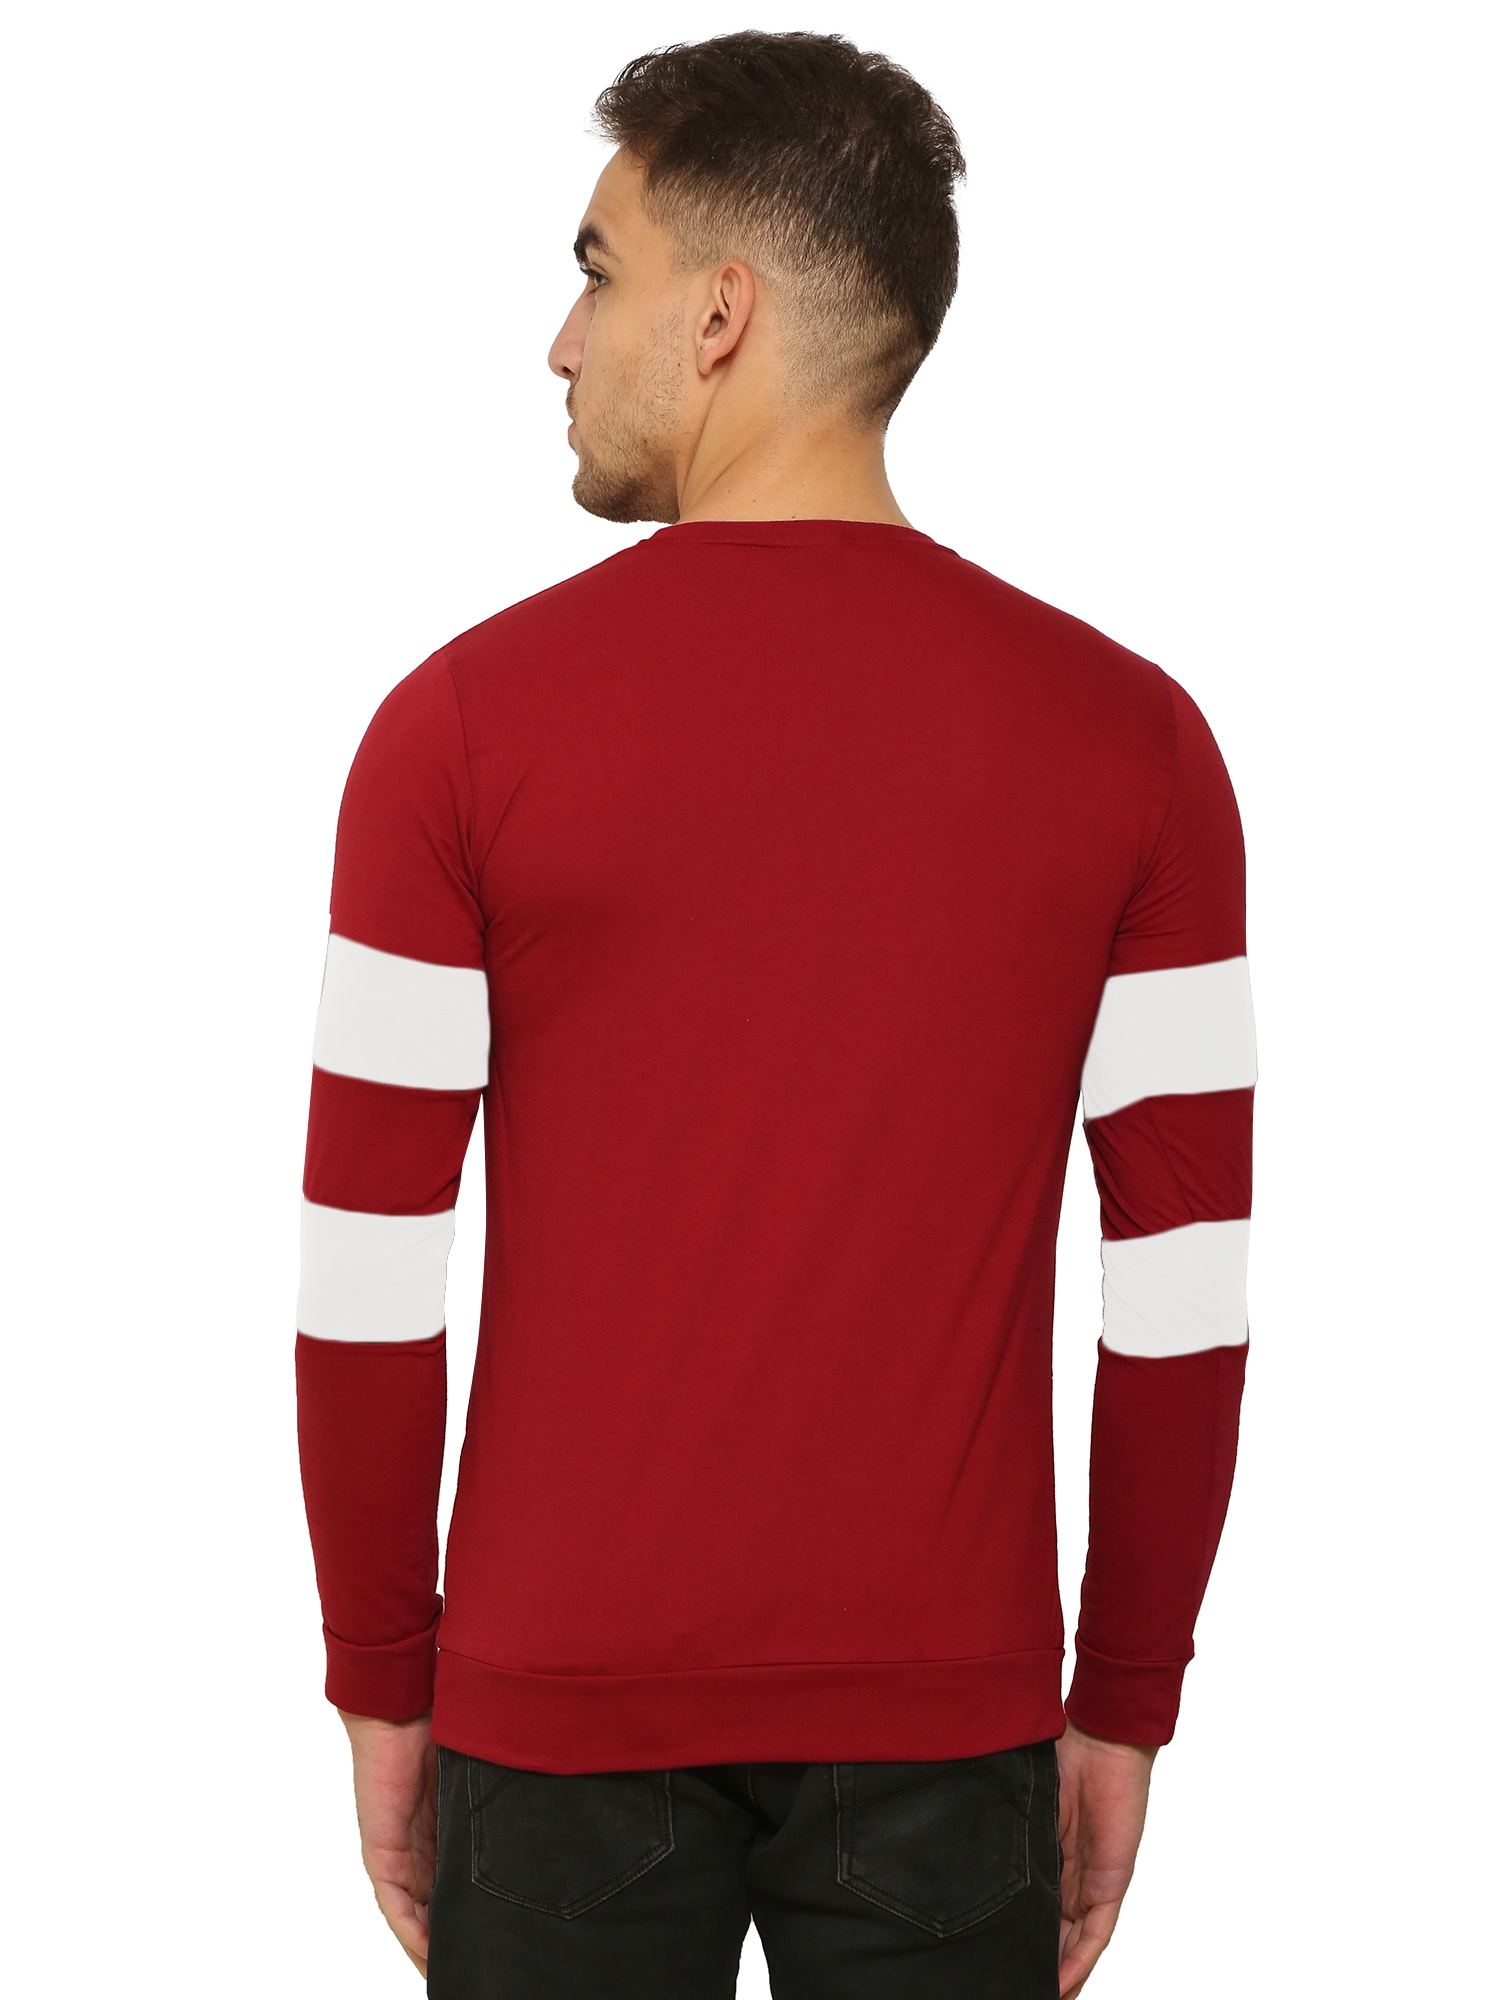 HEATHEX | Men's Chest Panel Regular Full Sleeve Fit Red T-Shirt 1